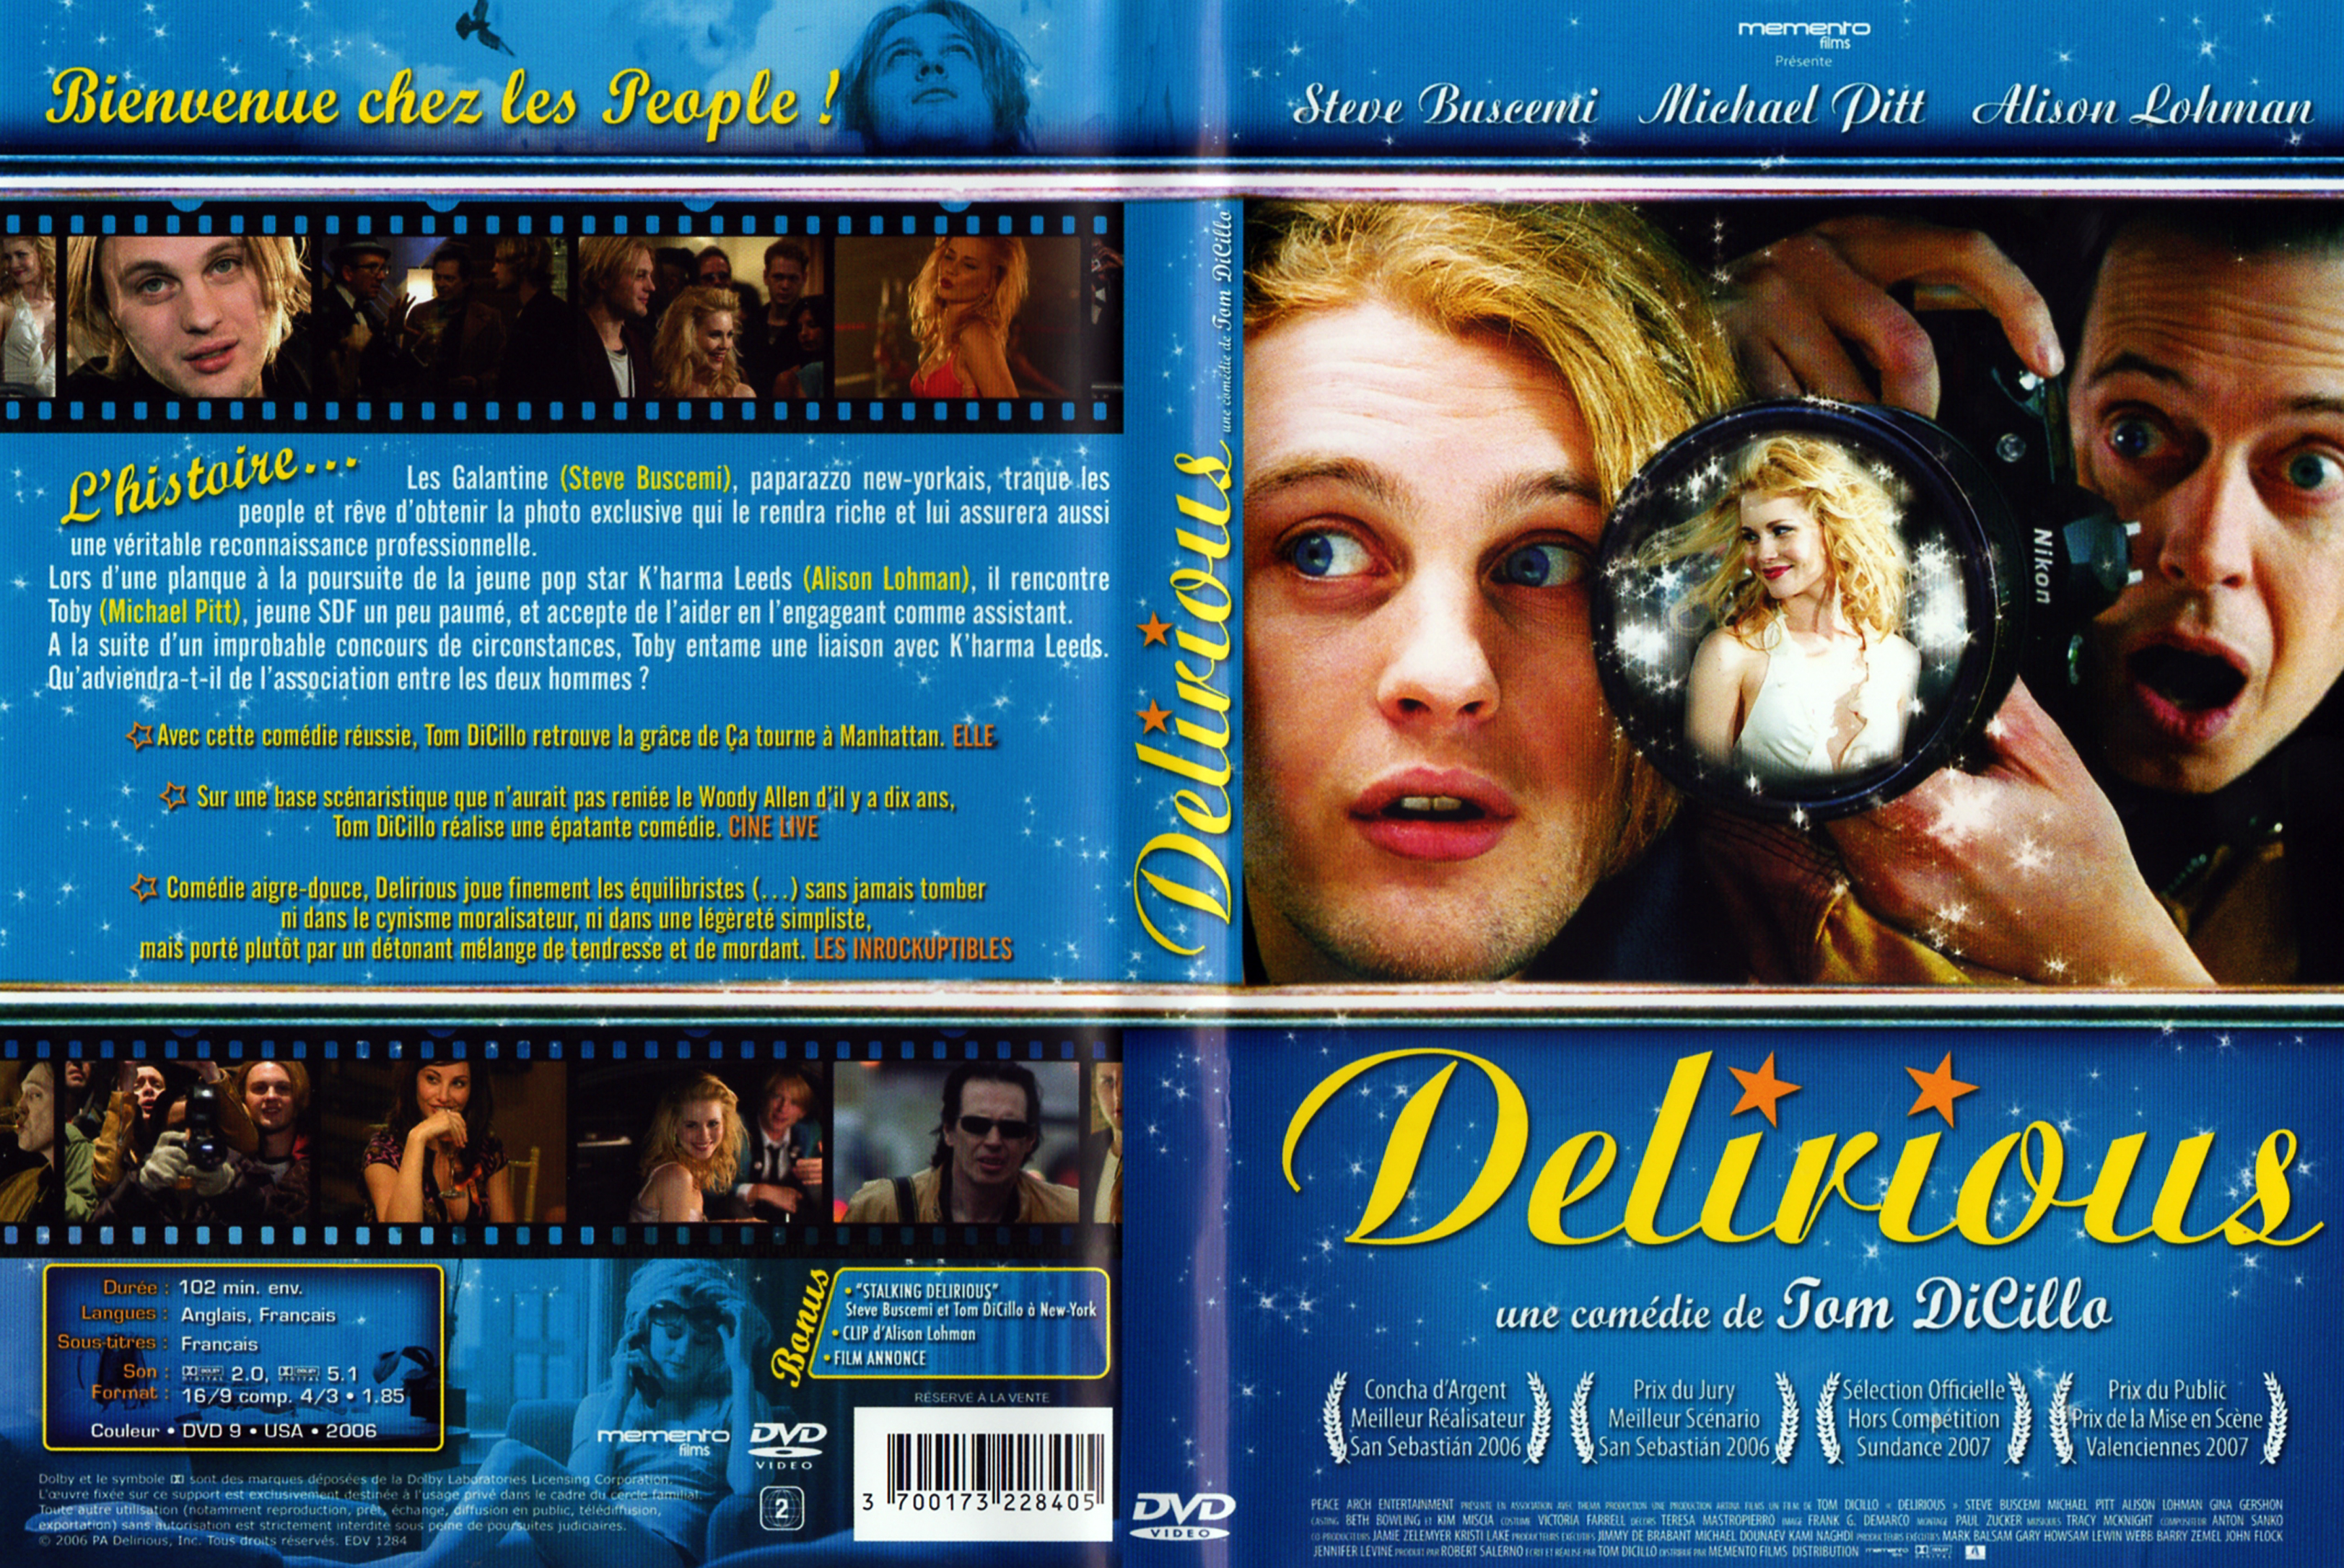 Jaquette DVD Delirious v2